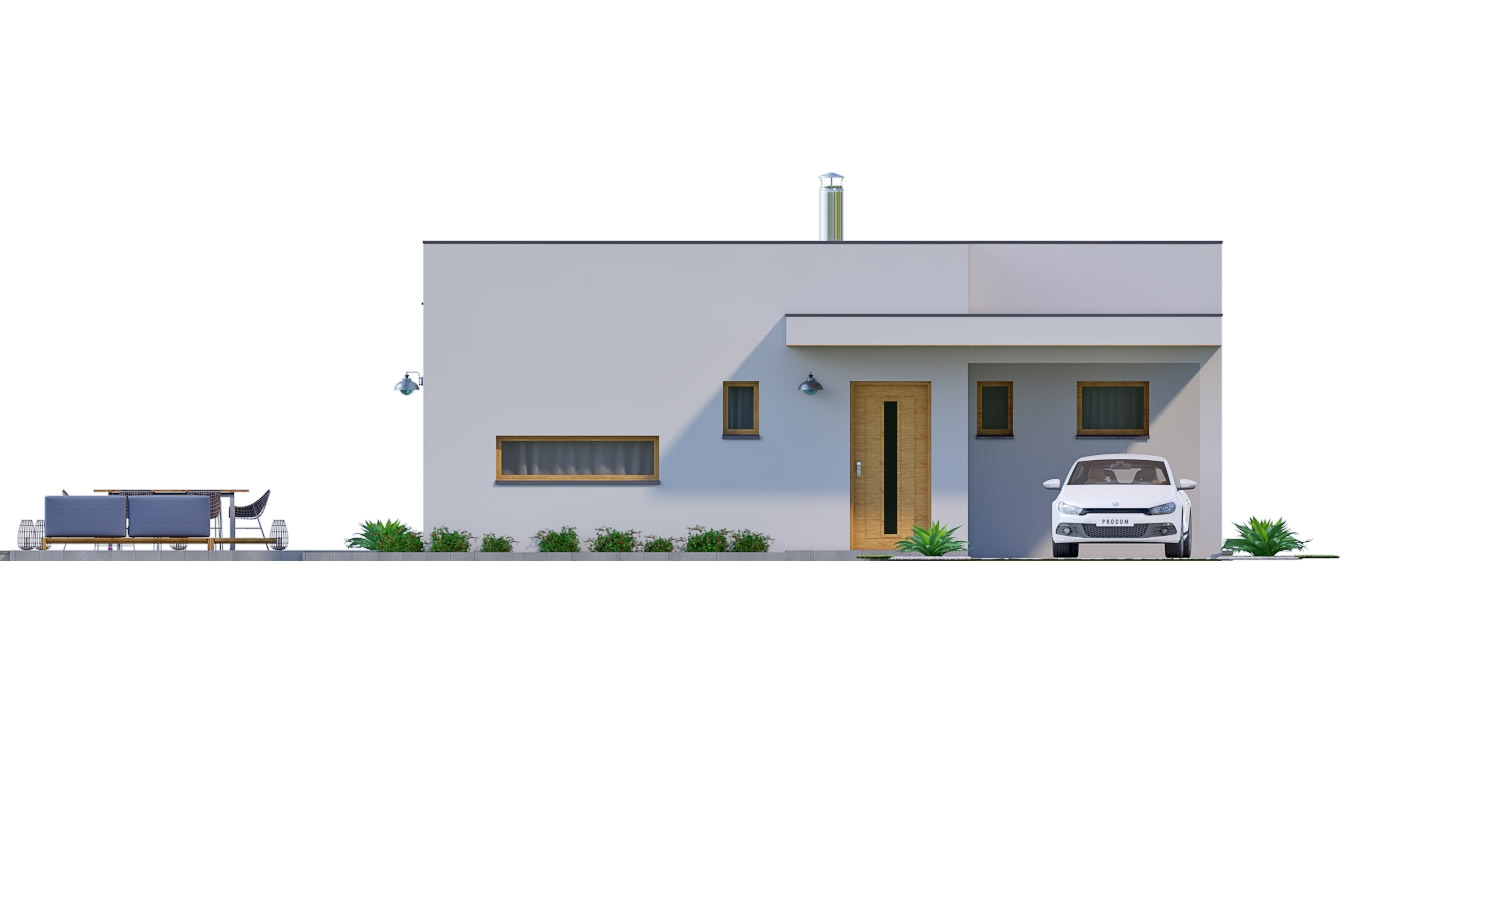 Pohľad 1. - Moderní 4-pokojový zděný rodinný dům s plochou střechou. Možnost realizace s valbovou nebo sedlovou střechou.